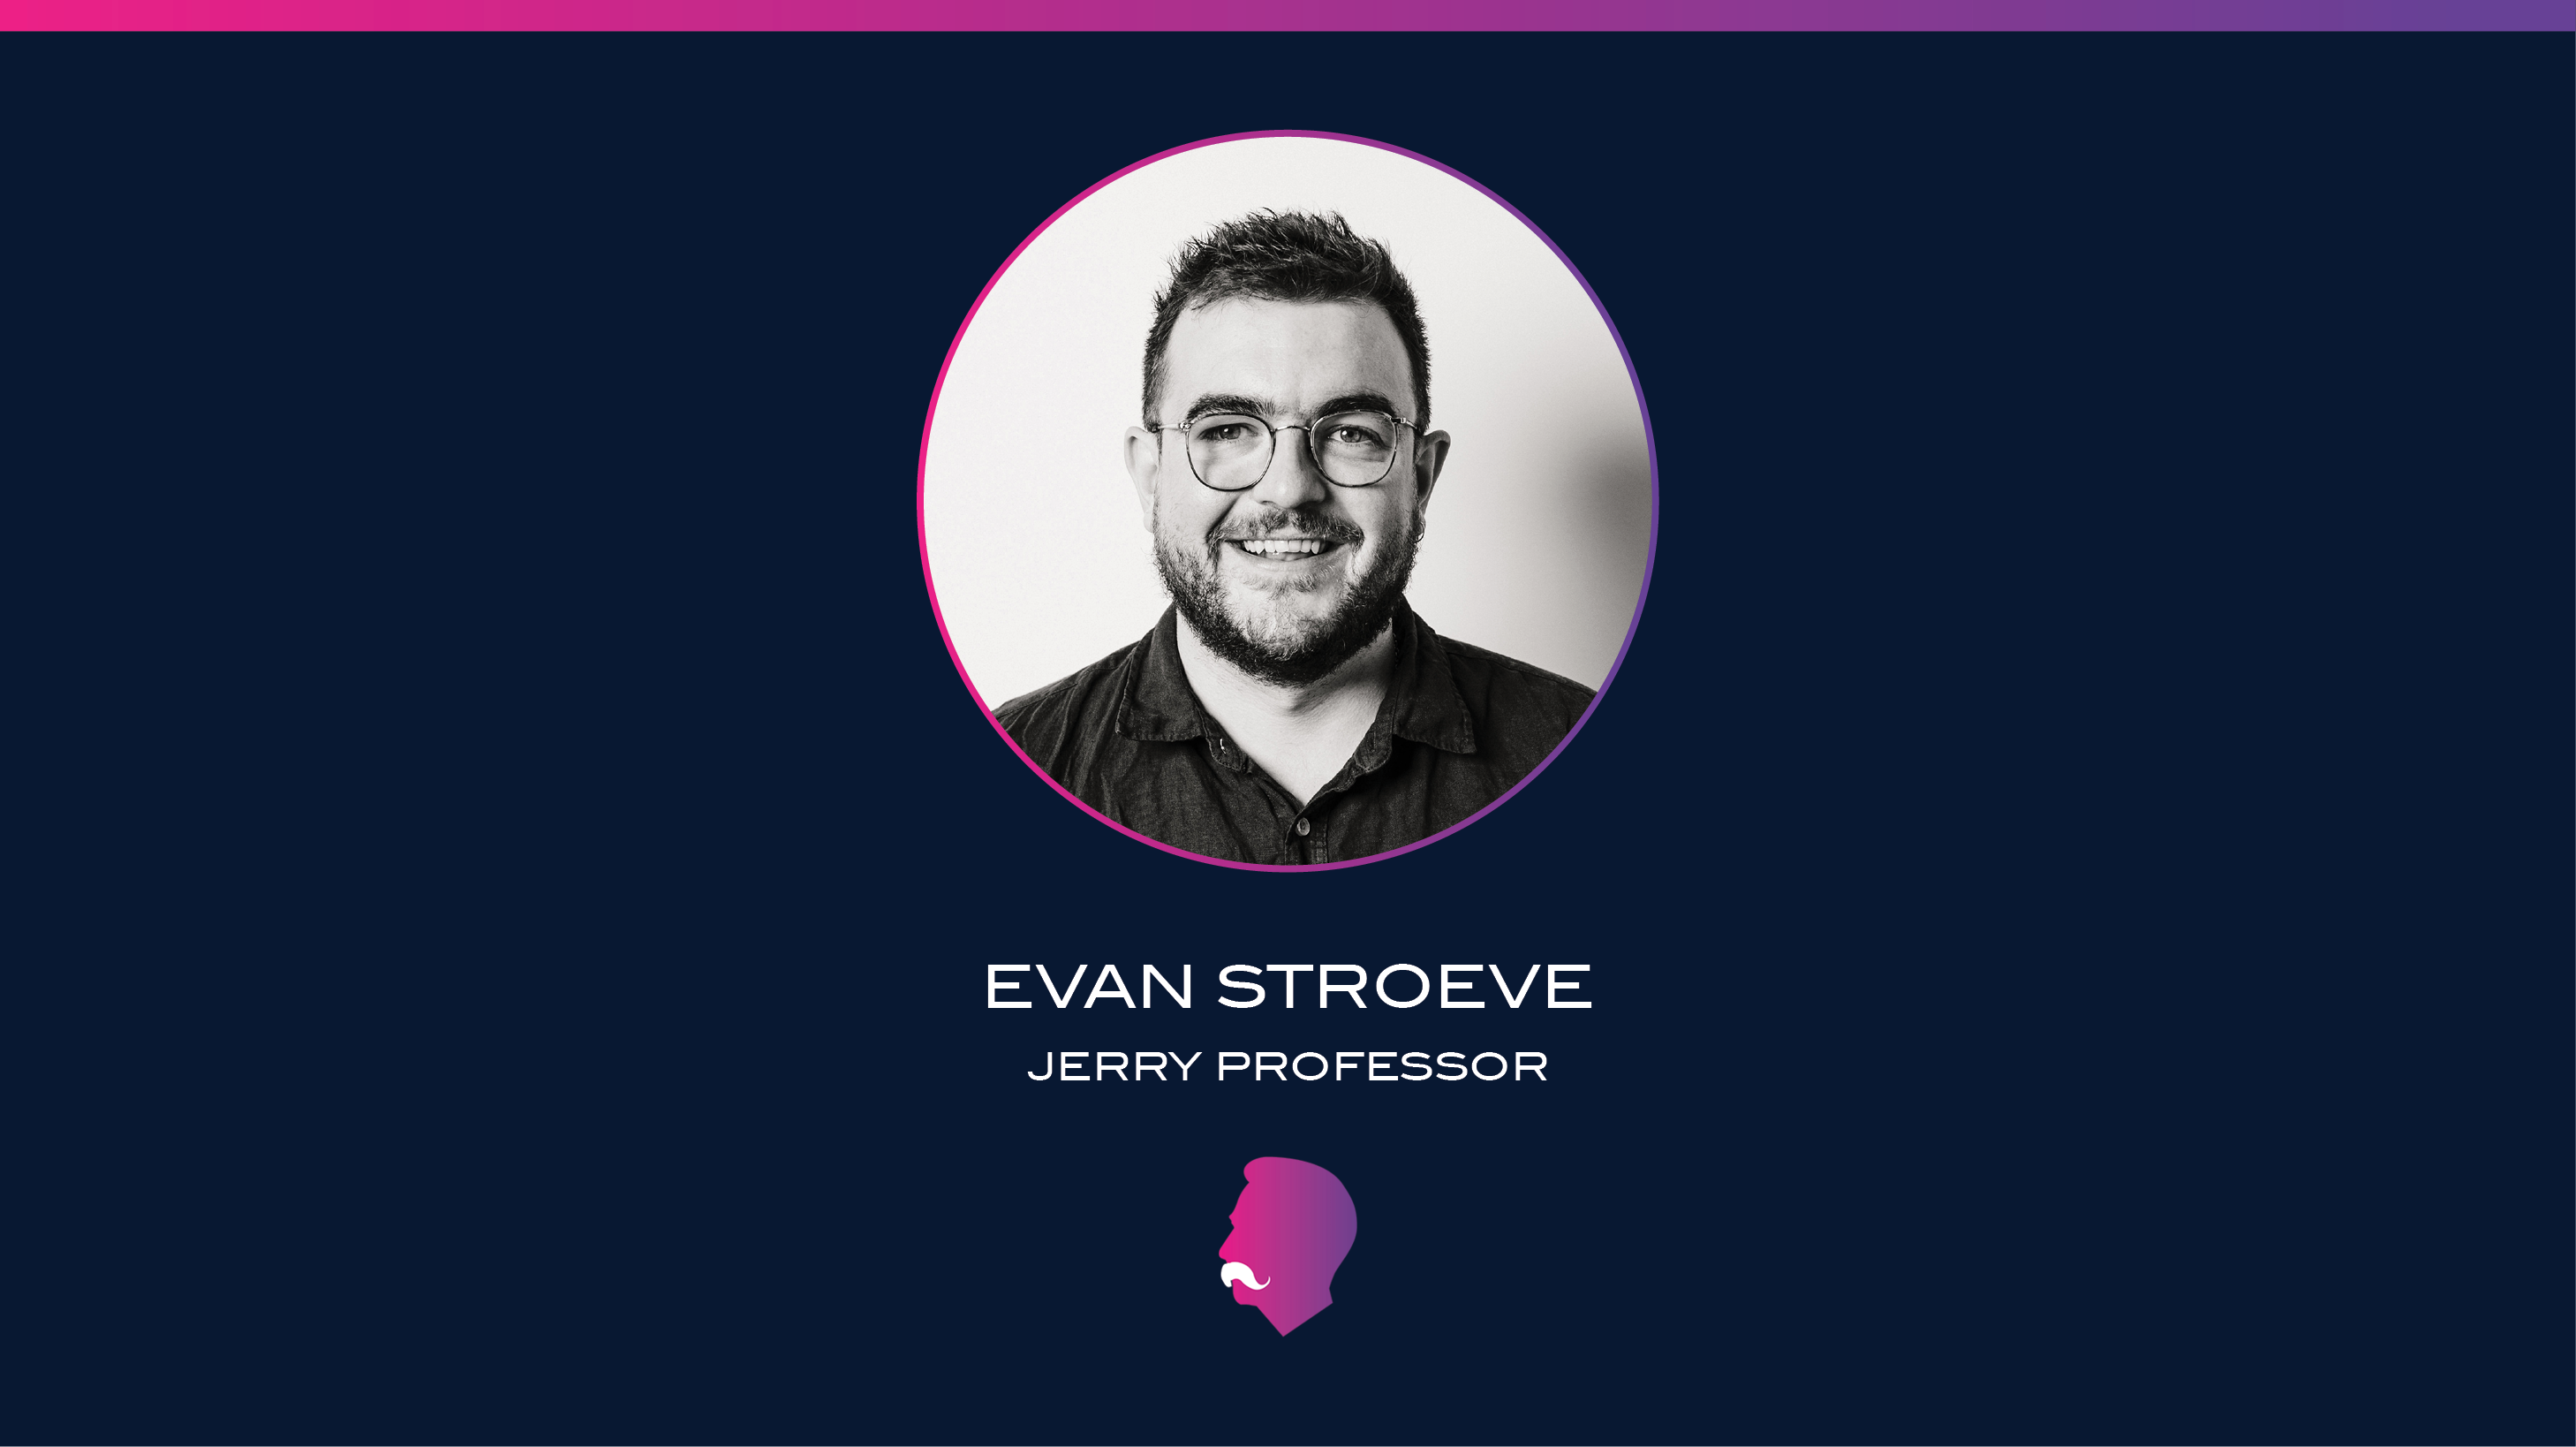 Welcome JERRY Professor, Evan Stroeve